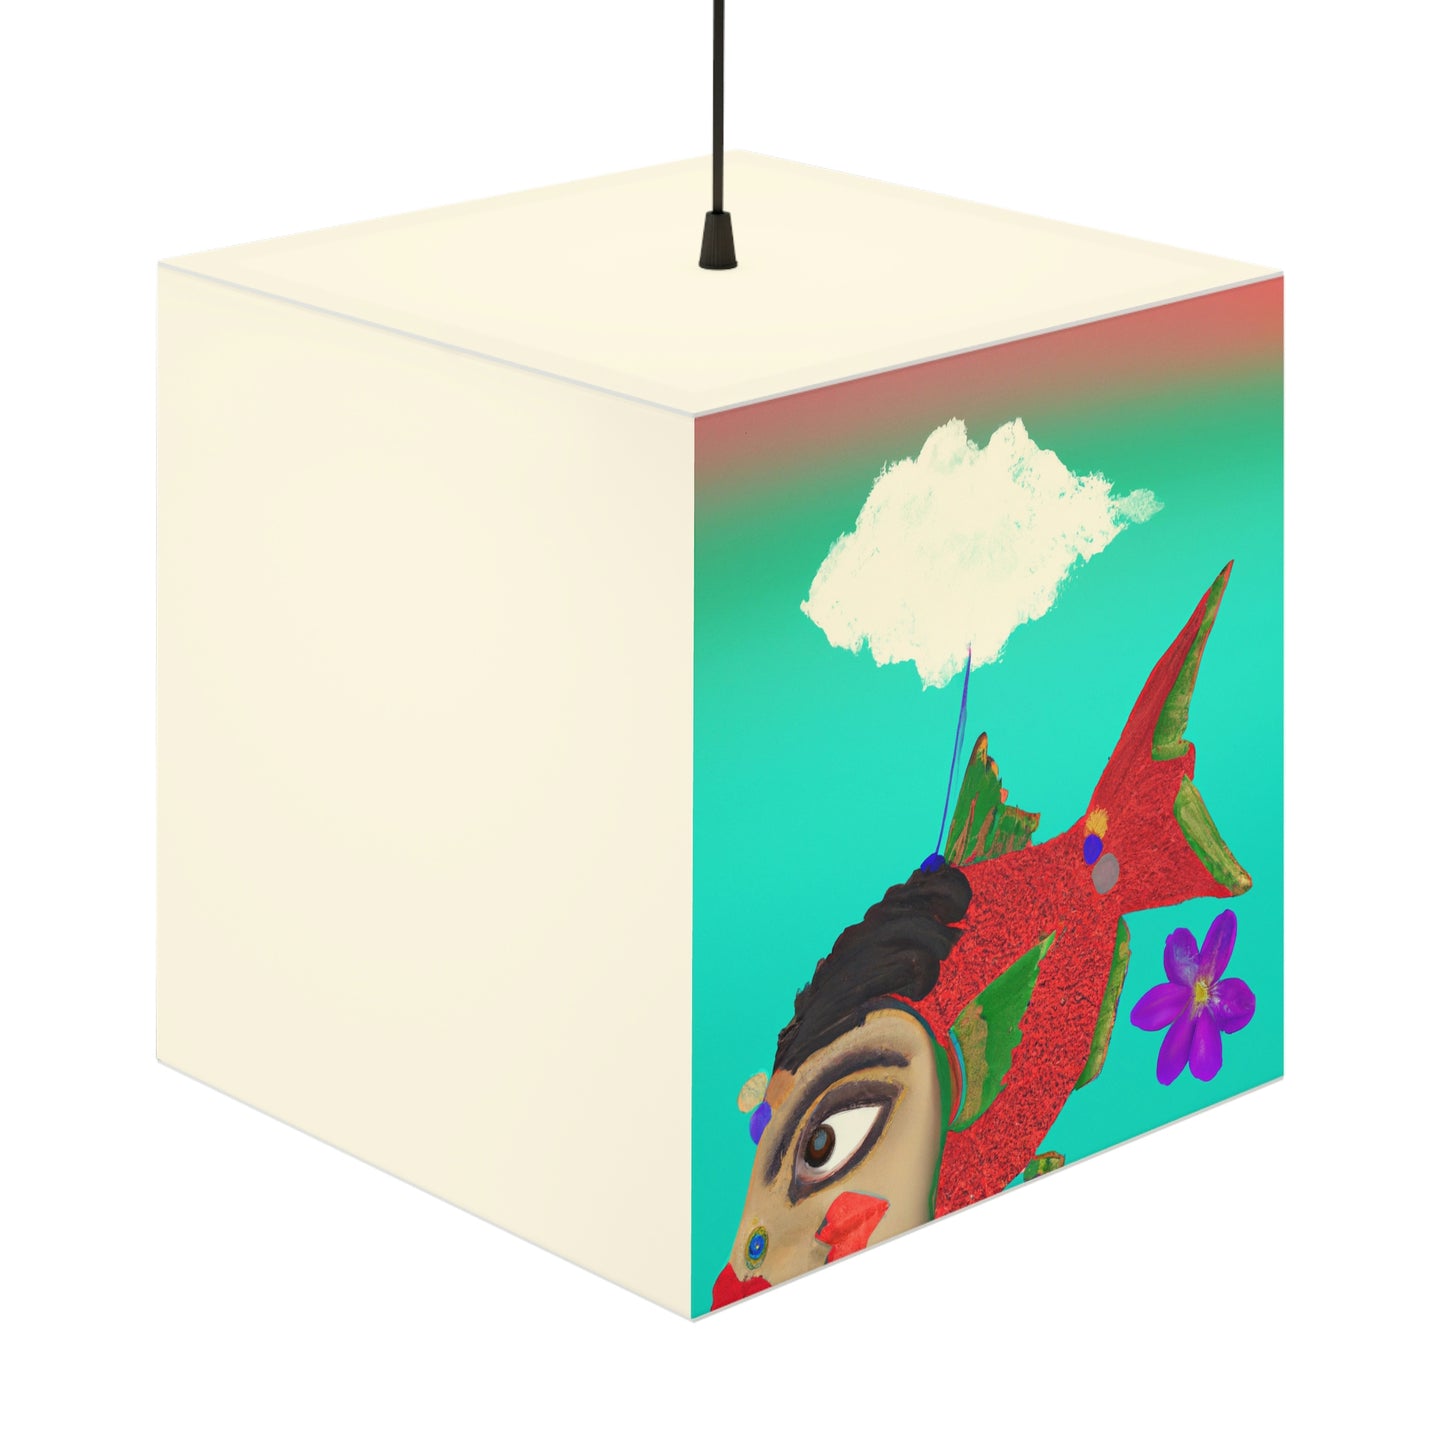 El misterioso pez volador y su enigmático secreto - La lámpara Alien Light Cube